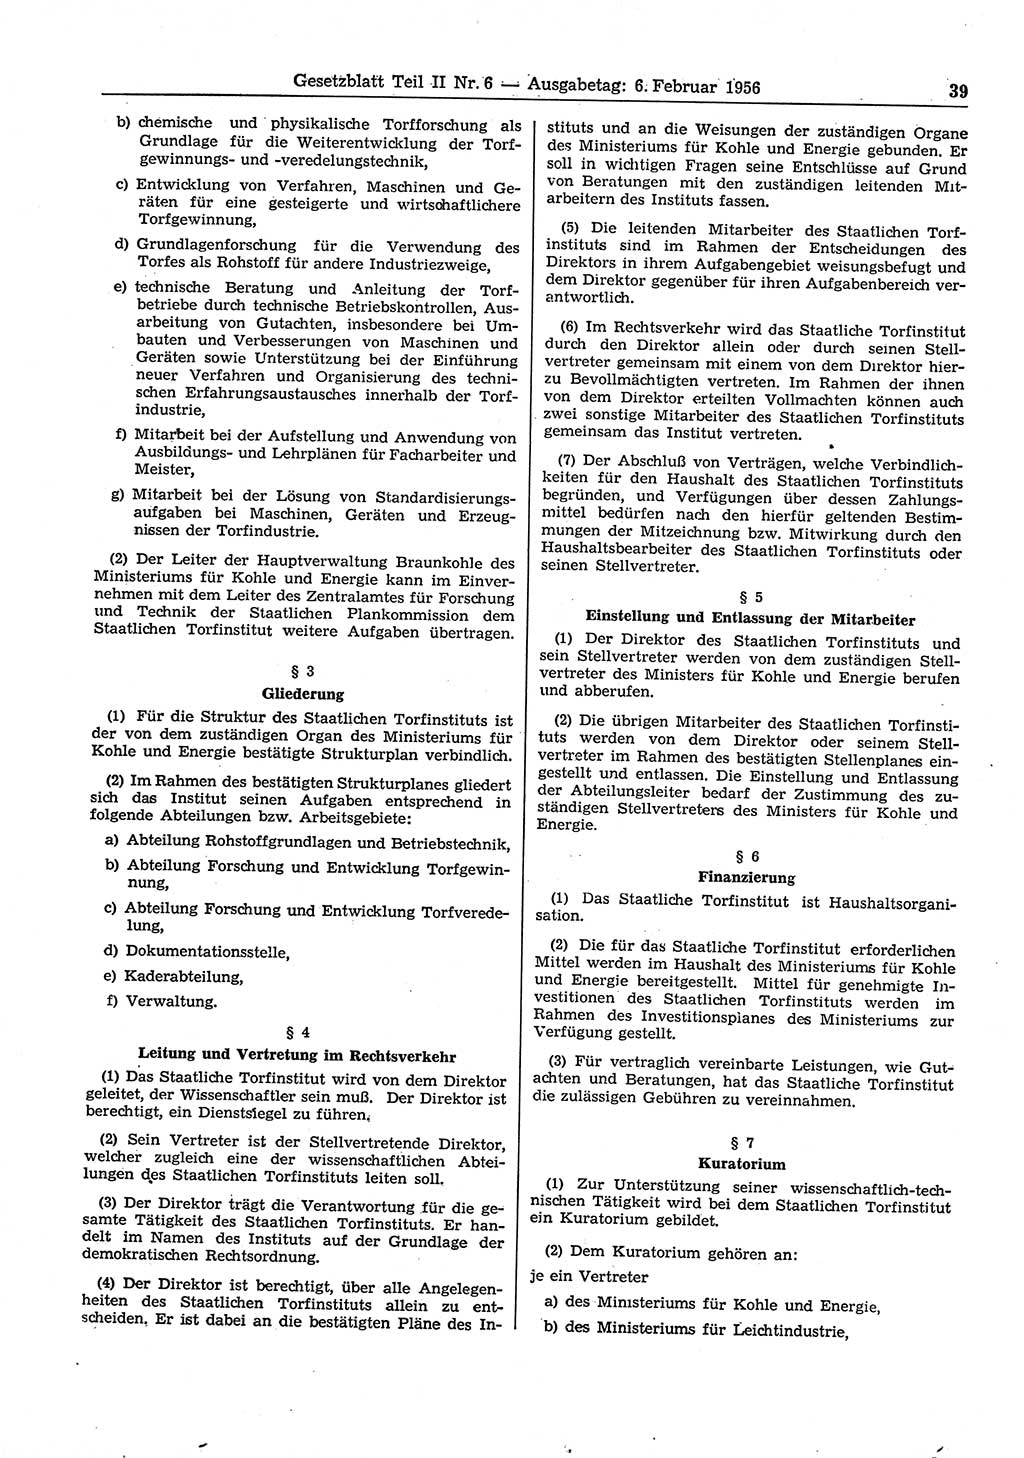 Gesetzblatt (GBl.) der Deutschen Demokratischen Republik (DDR) Teil ⅠⅠ 1956, Seite 39 (GBl. DDR ⅠⅠ 1956, S. 39)